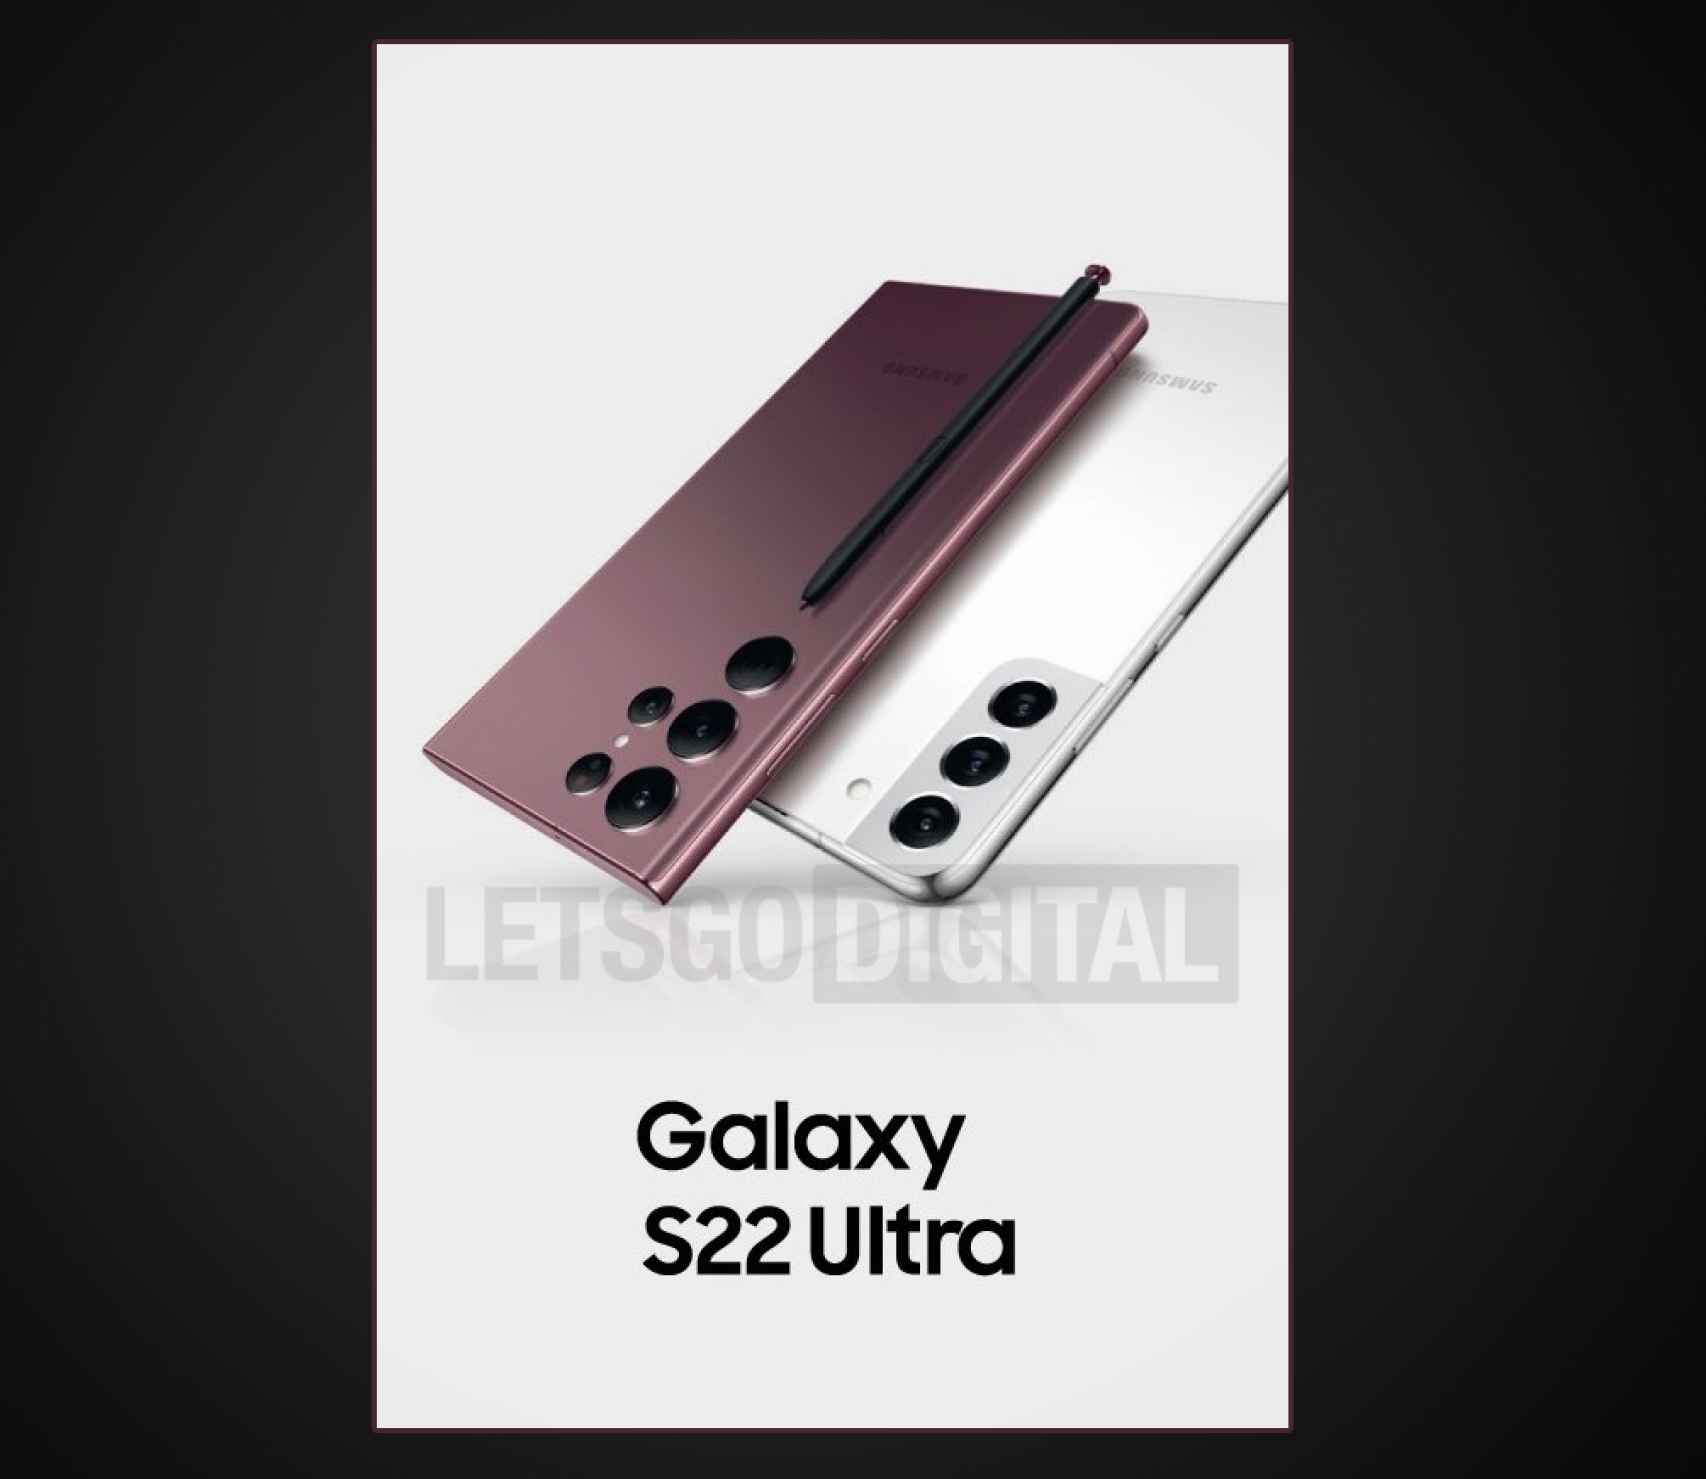 Pósterl filtrado del Samsung Galaxy S22 Ultra